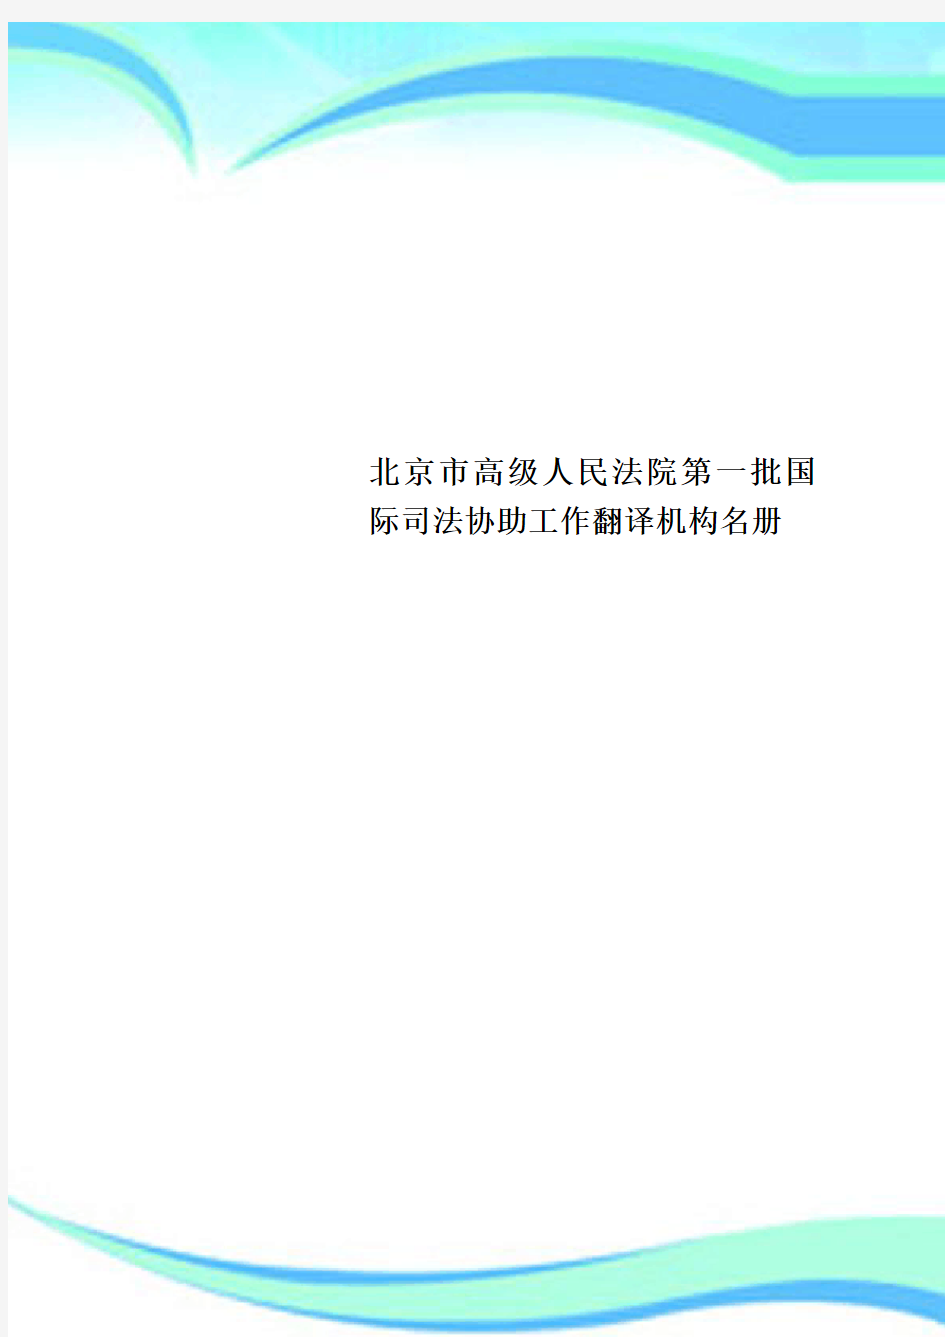 北京市高级人民法院第一批国际司法协助工作翻译机构名册